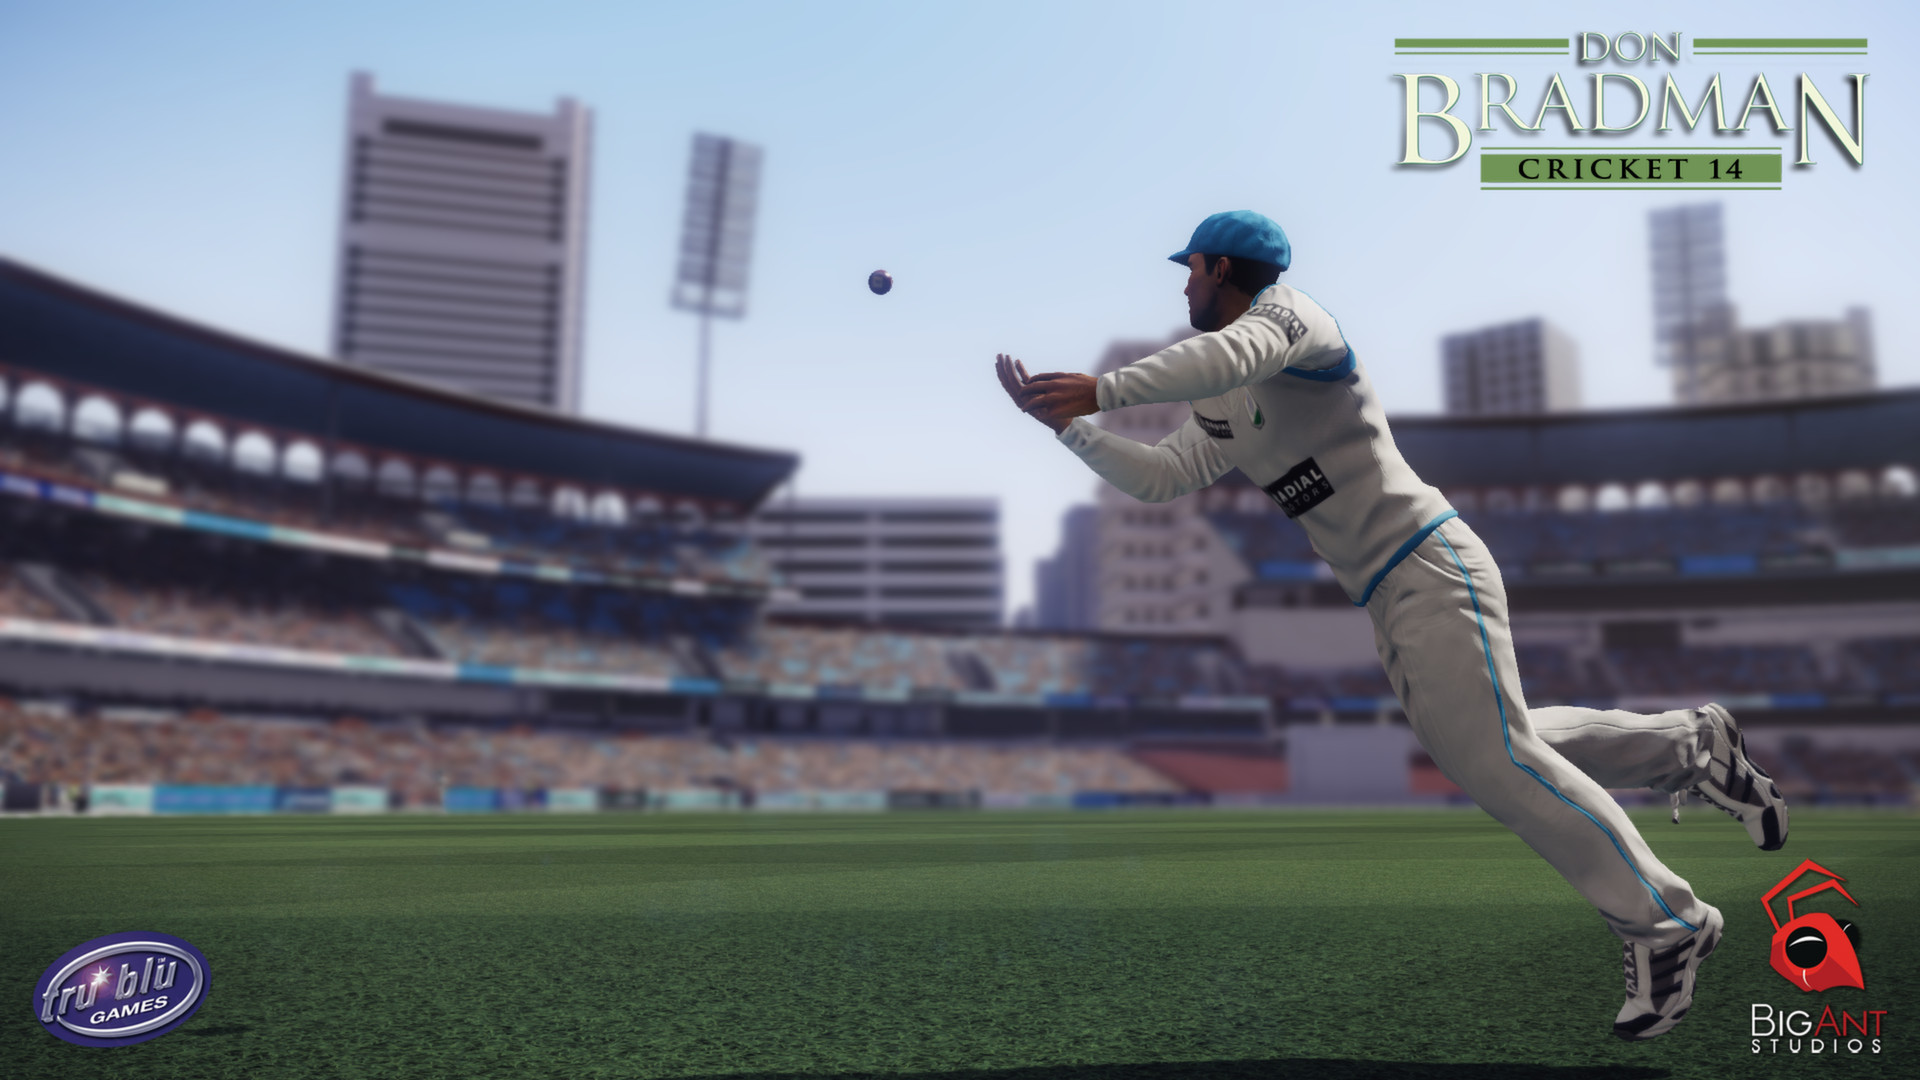 Don Bradman Cricket 14 on Steam